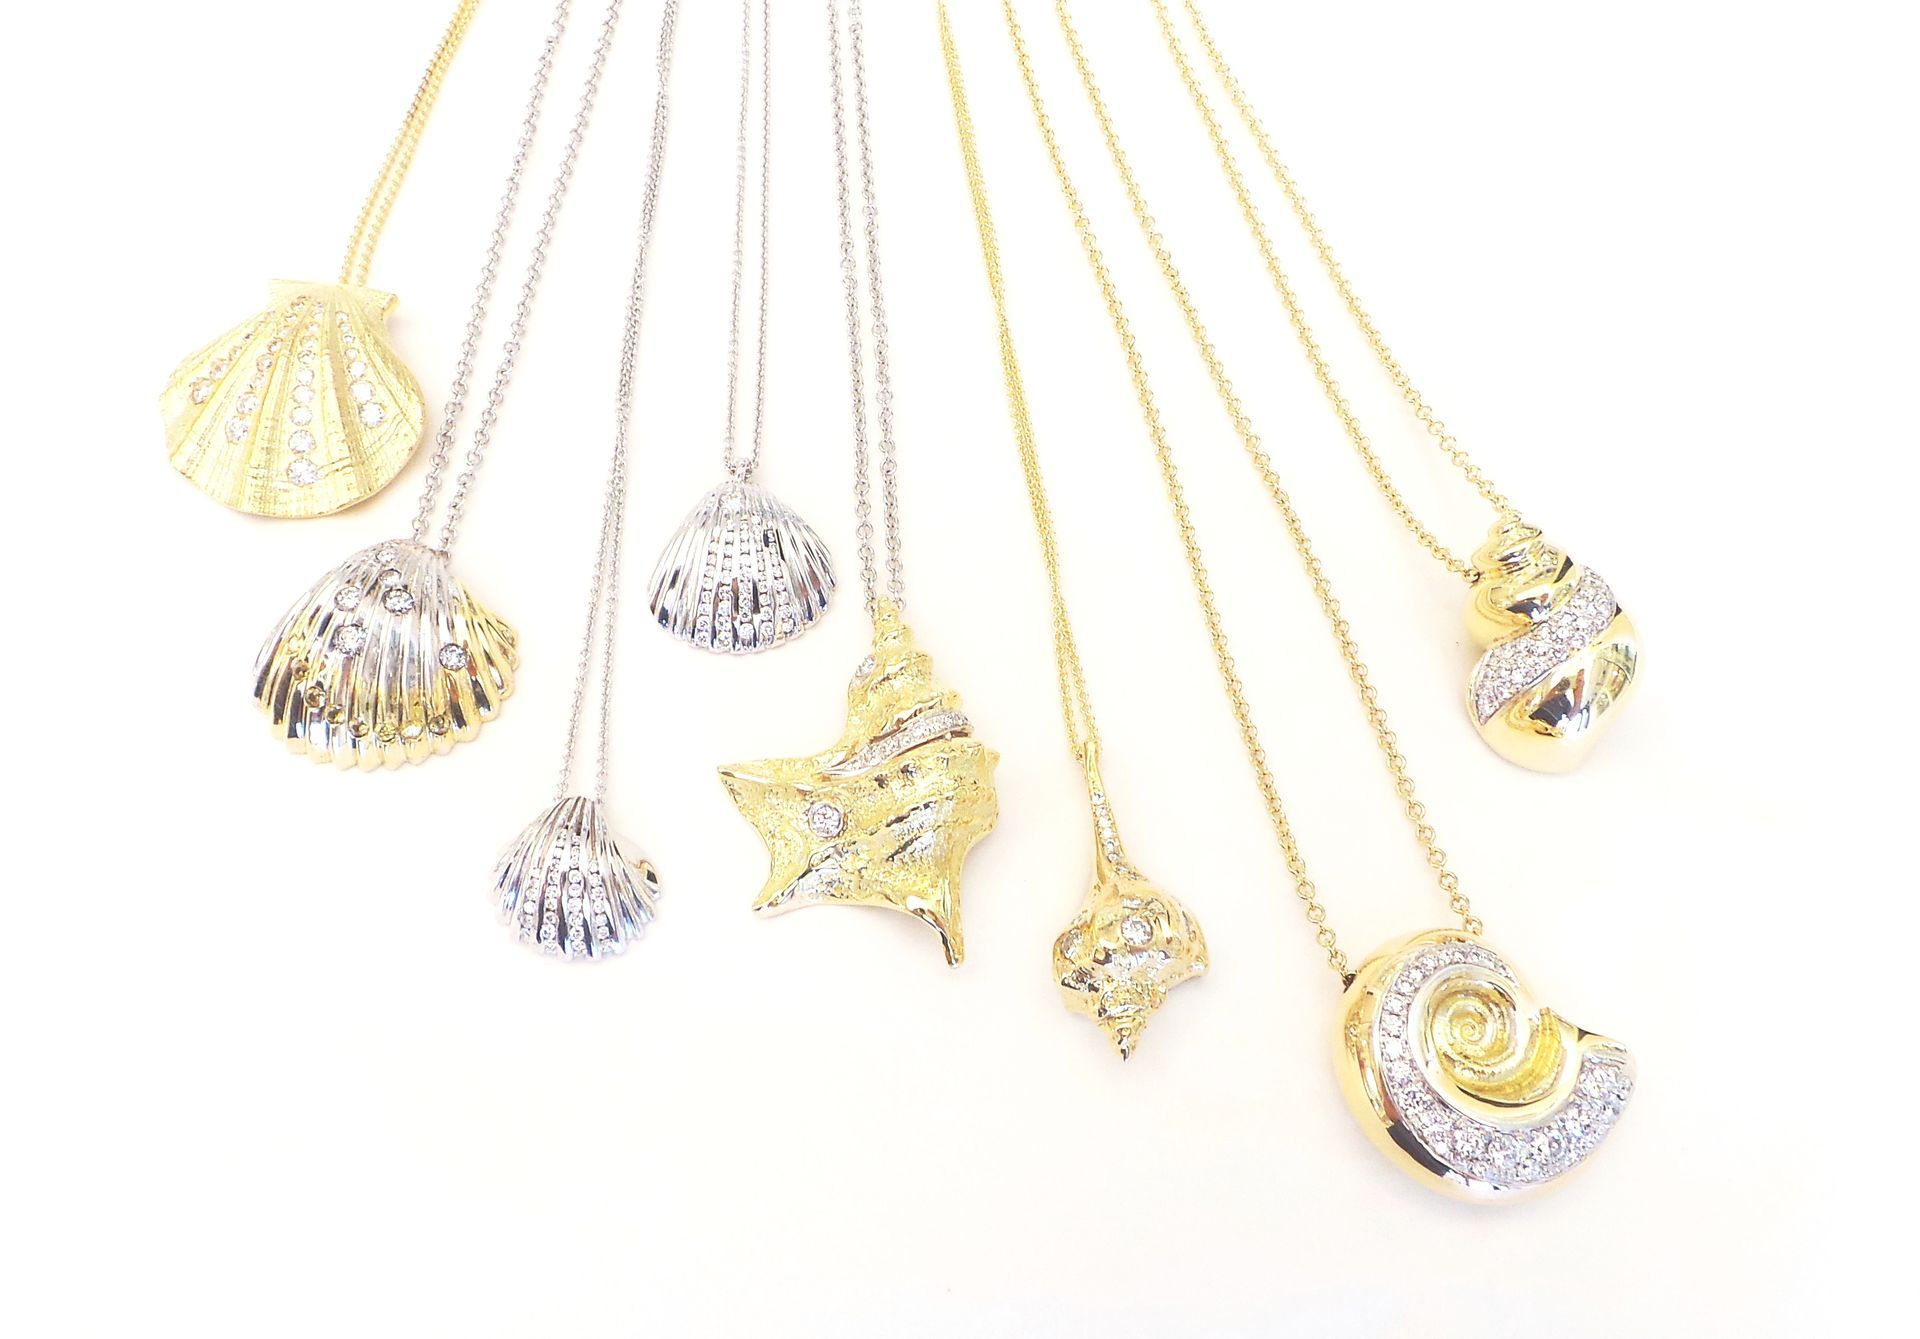 Cattelan - conchiglie in oro 750 e diamanti; conchiglie in oro;